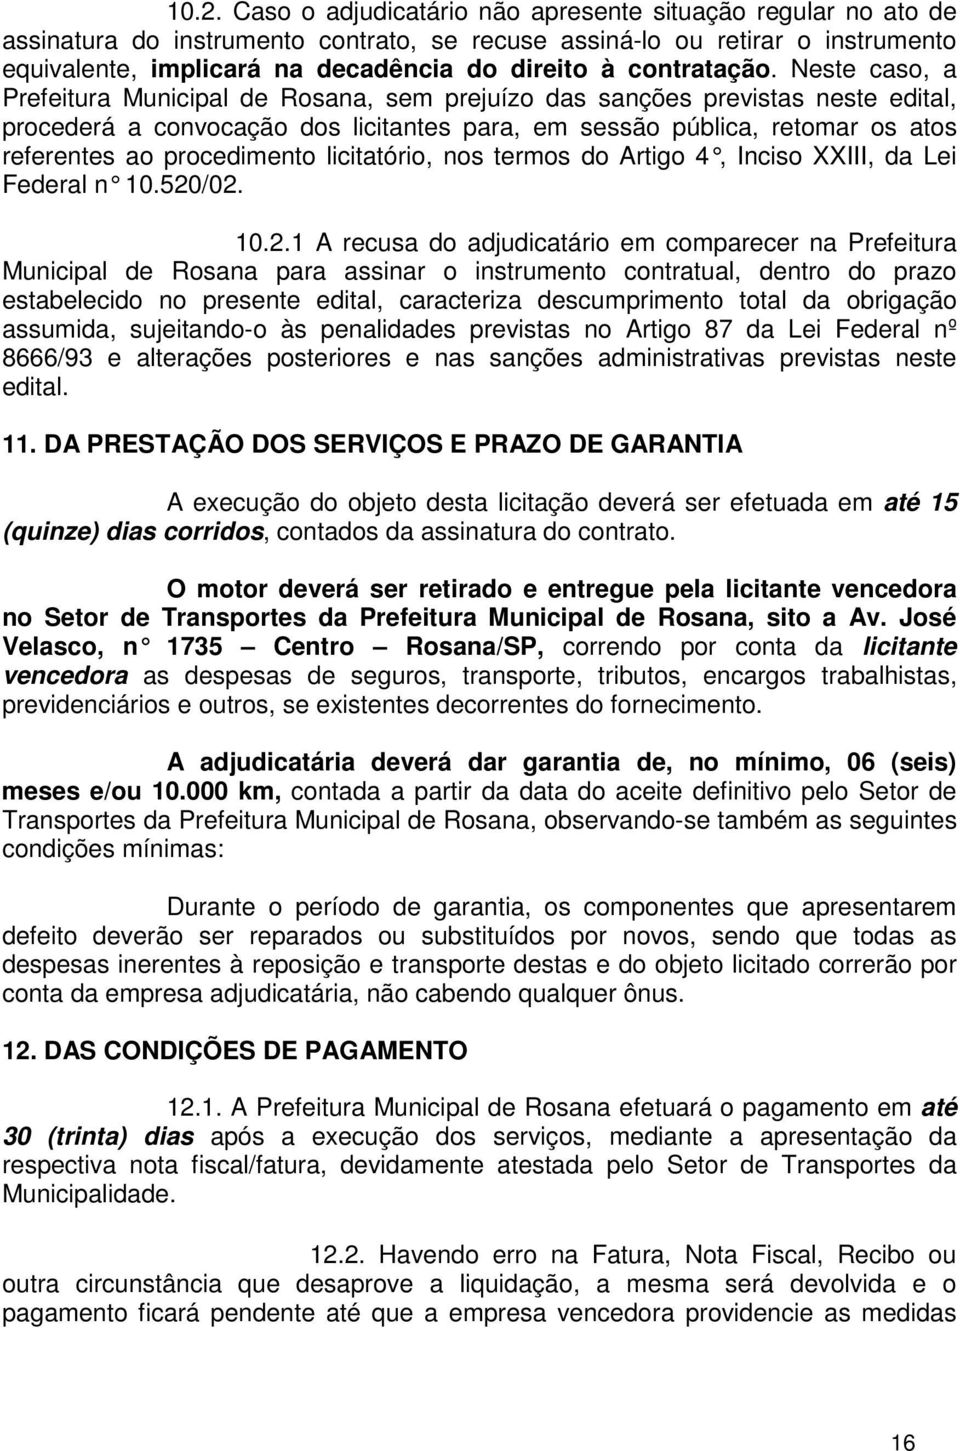 Neste caso, a Prefeitura Municipal de Rosana, sem prejuízo das sanções previstas neste edital, procederá a convocação dos licitantes para, em sessão pública, retomar os atos referentes ao